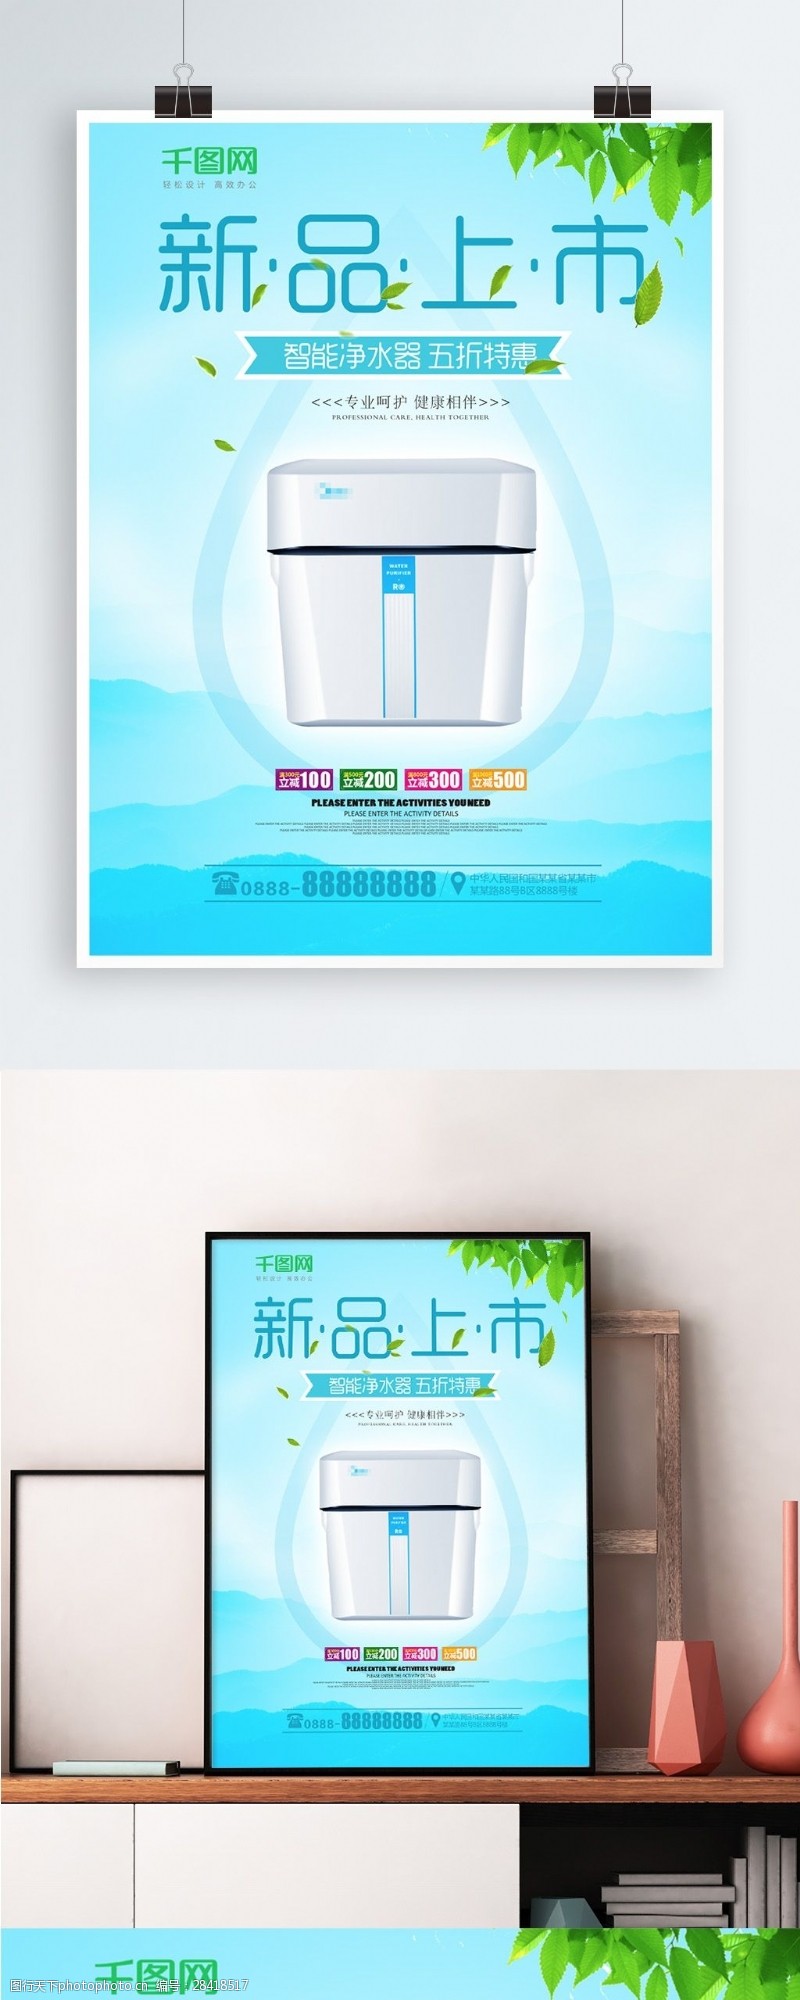 饮水设备广告单净水器新品上市促销海报